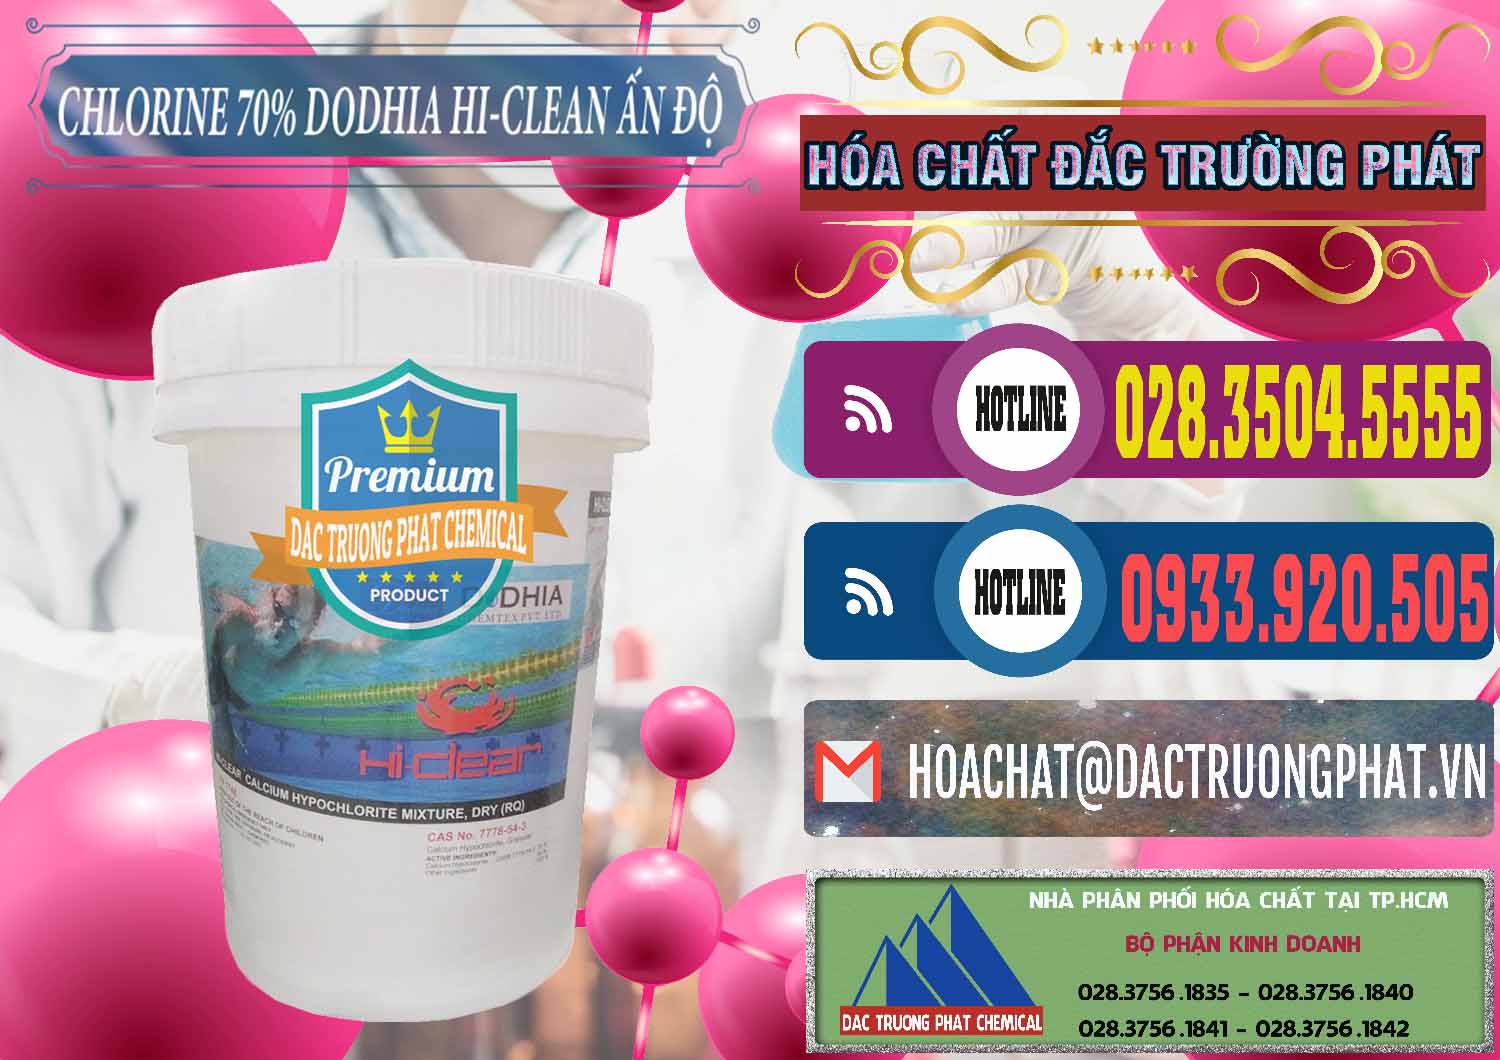 Cty chuyên cung cấp _ bán Chlorine – Clorin 70% Dodhia Hi-Clean Ấn Độ India - 0214 - Đơn vị chuyên bán & phân phối hóa chất tại TP.HCM - muabanhoachat.com.vn